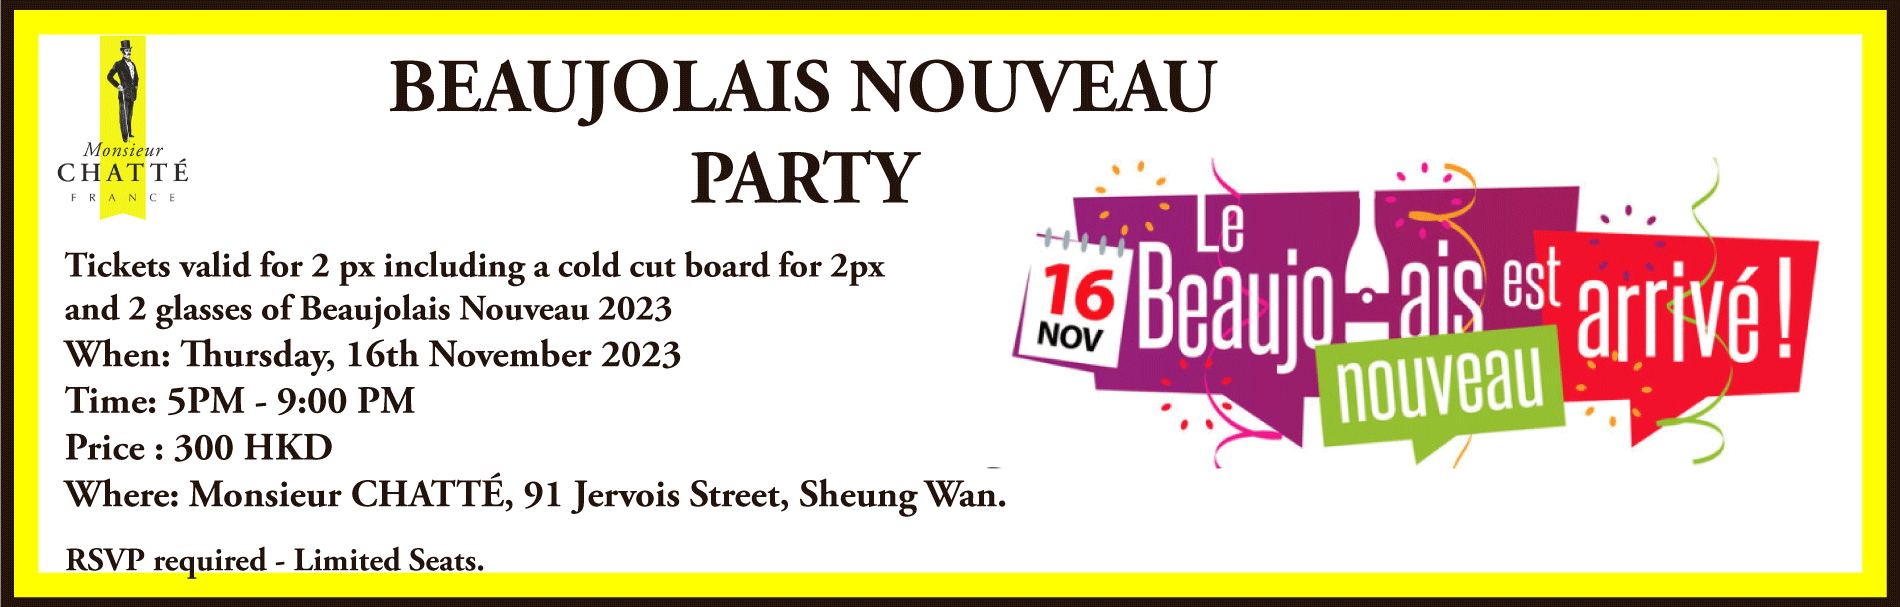 Beaujolais Nouveau 2023 Party !